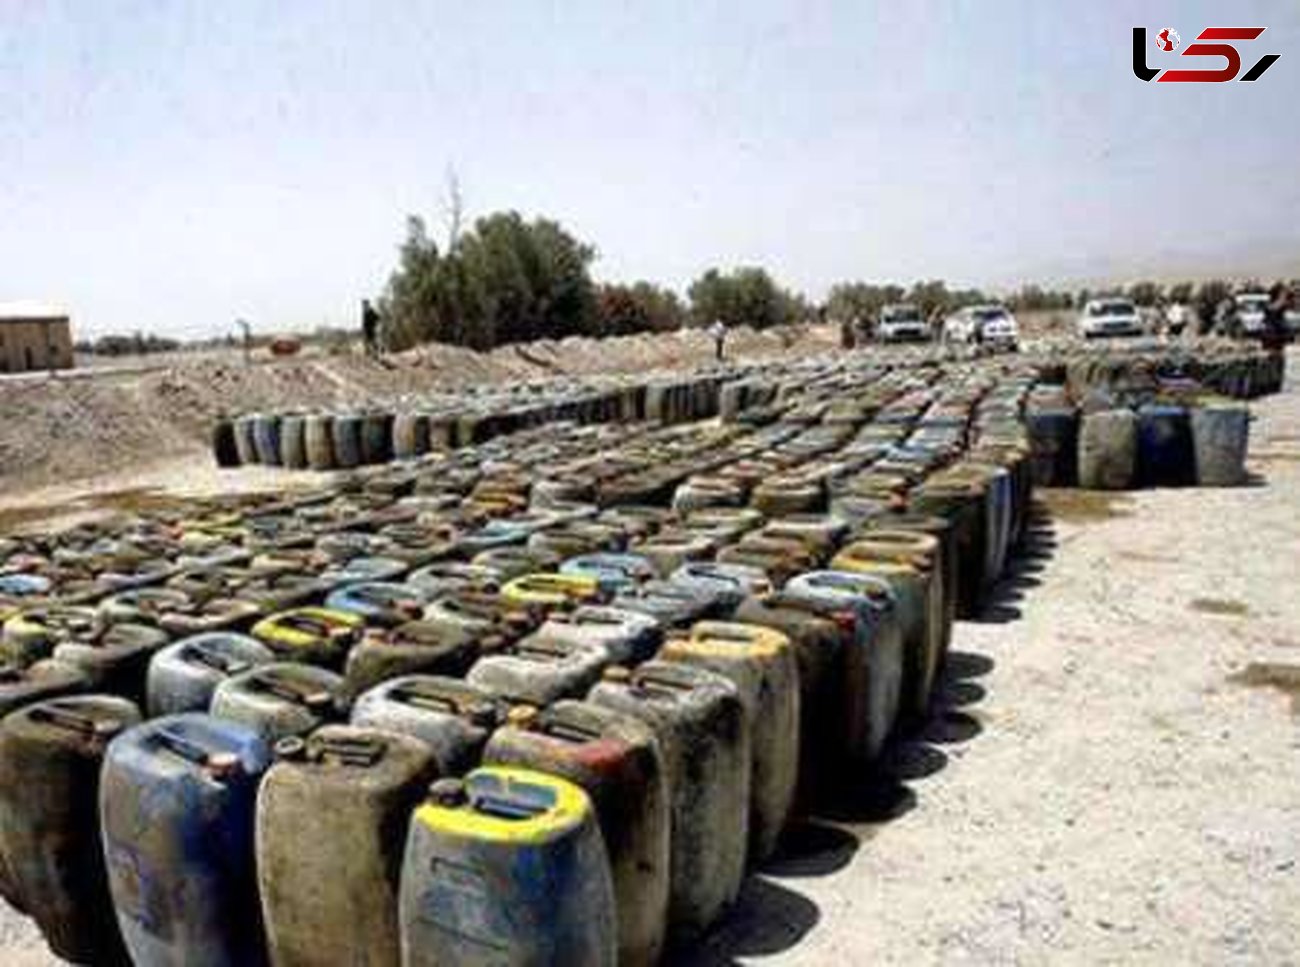 باند قاچاق سوخت در جنوب استان متلاشی شد/ کشف ۱۱ هزار لیتر گازوئیل قاچاق